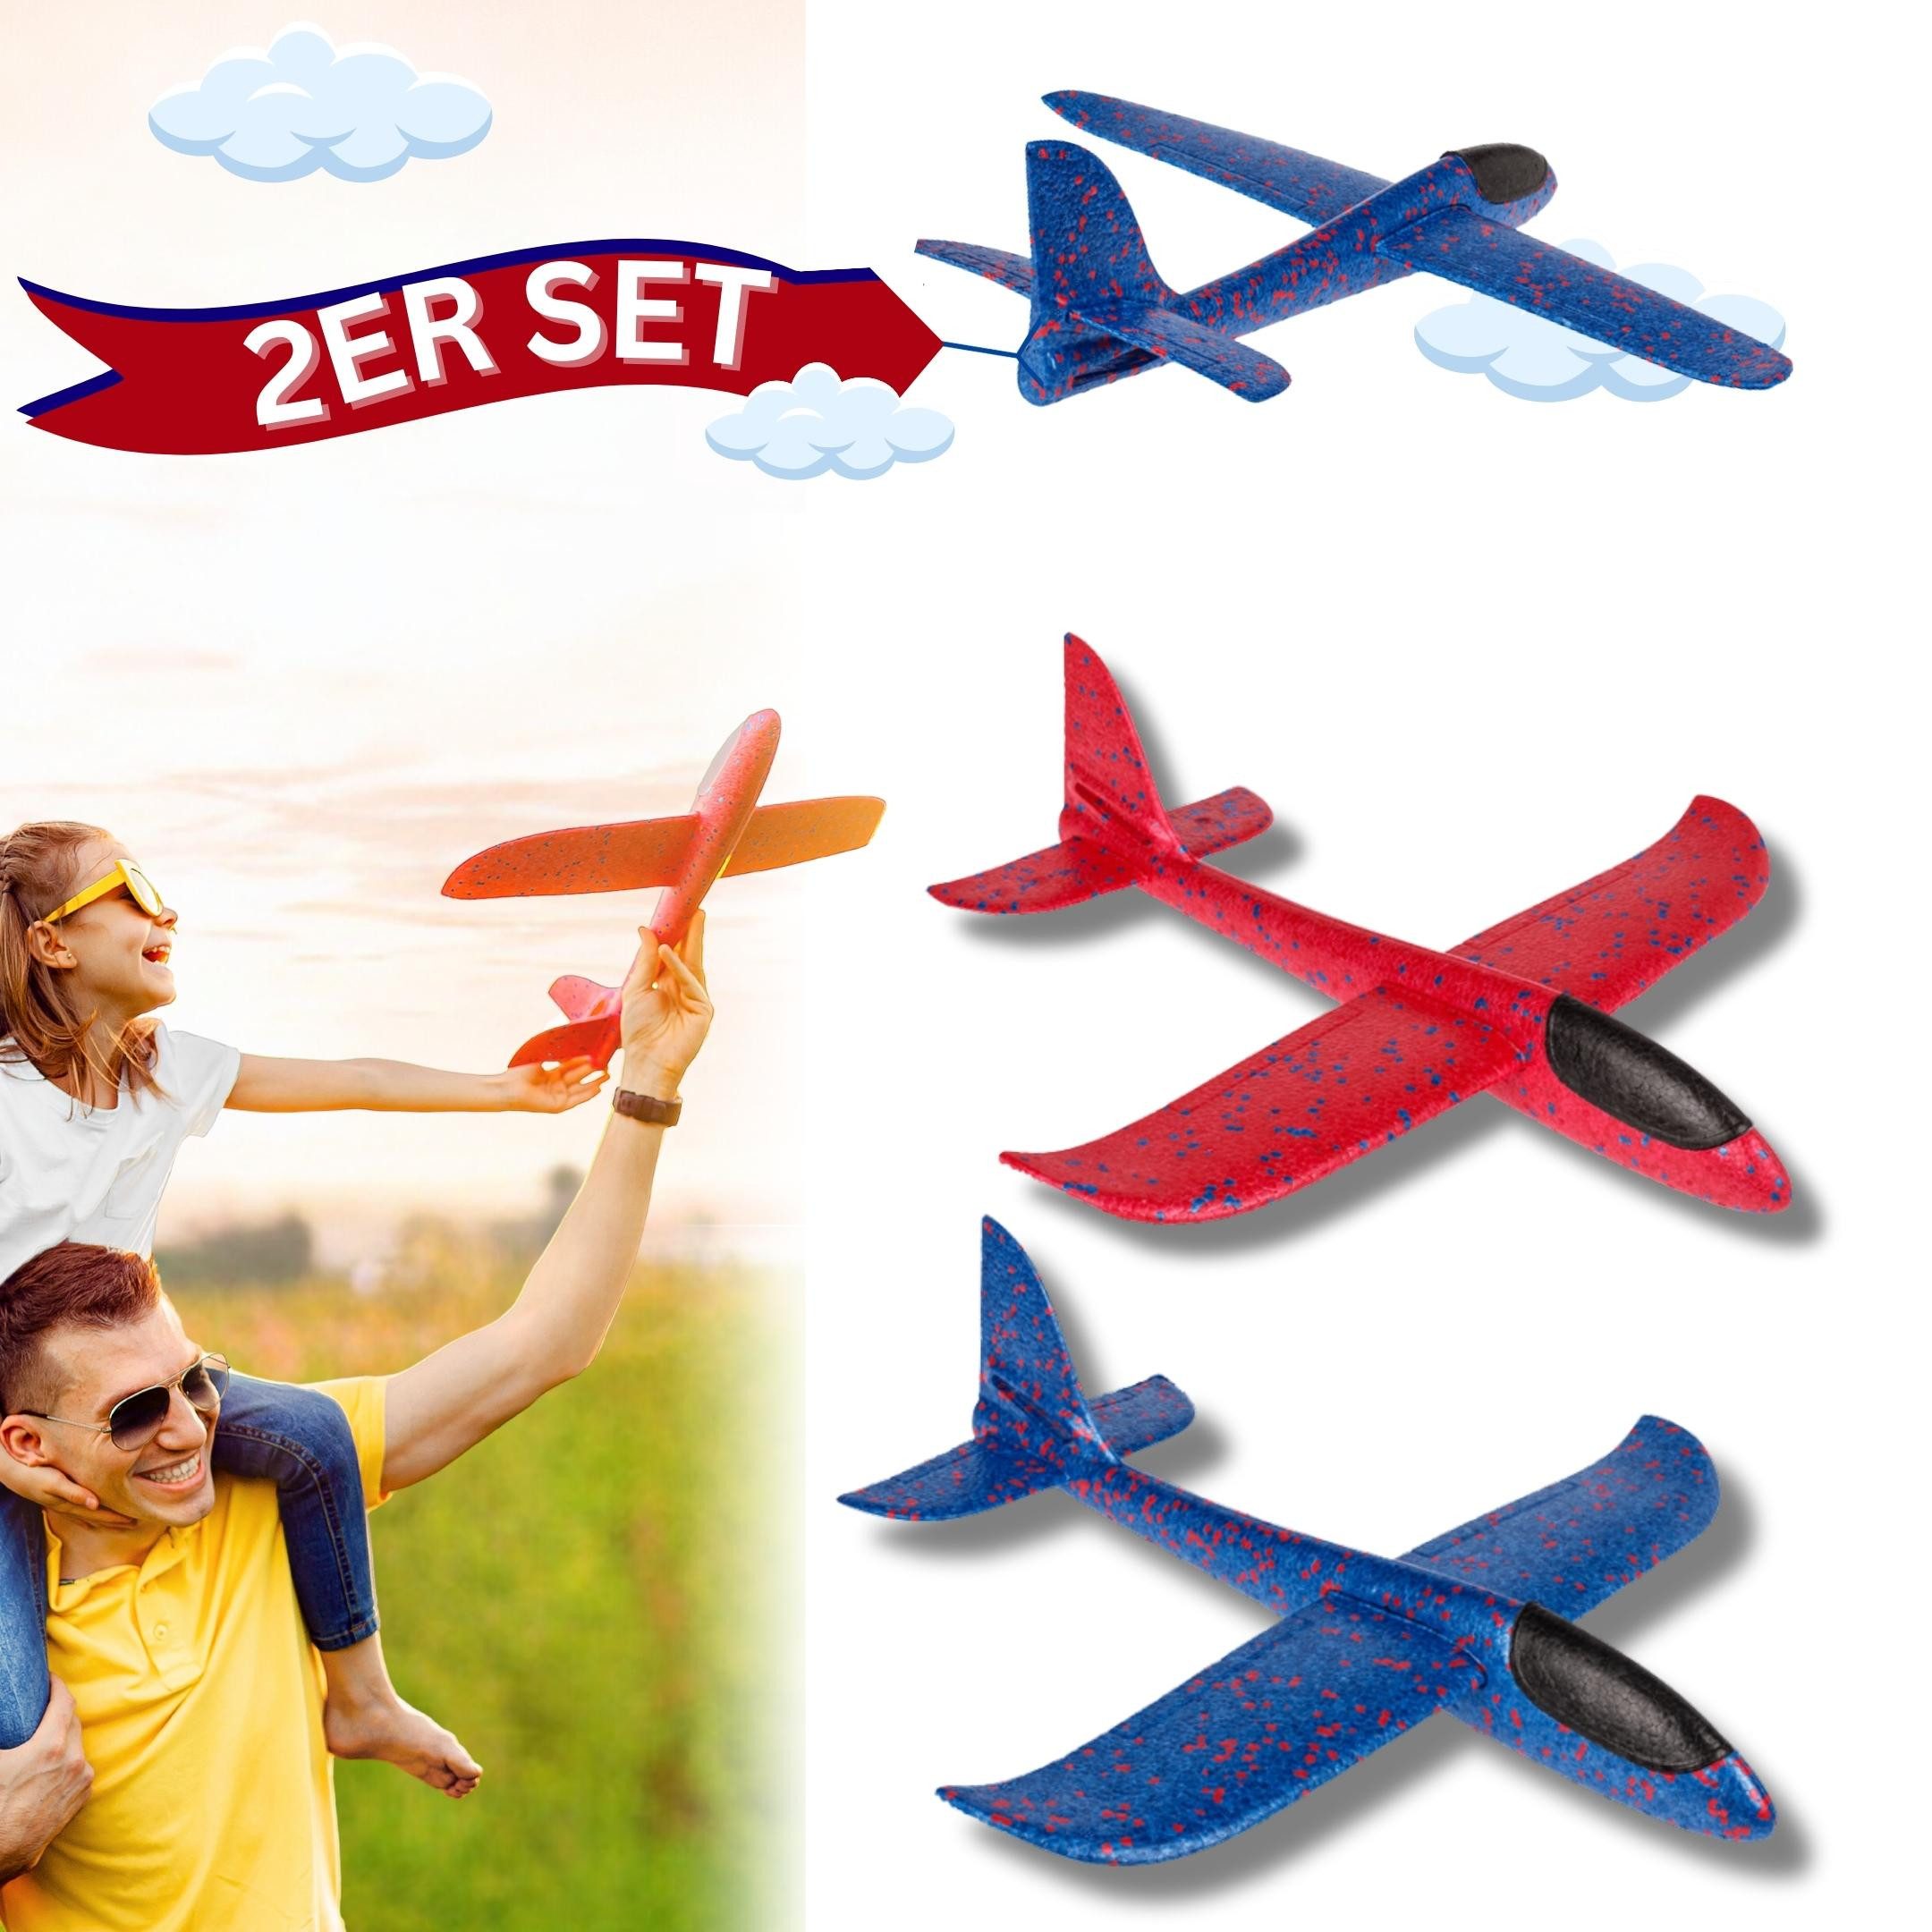 Bada Bing Spielzeug-Flugzeug XL Segelflieger Schaumstoff-Gleiter Flugzeug, (2er Set bestehend aus einem roten und einem blauen Flieger, 2-tlg., 48 cm große Wurfgleiter mit 49 cm Spannweite), Zwei verschiedene Flugoptionen